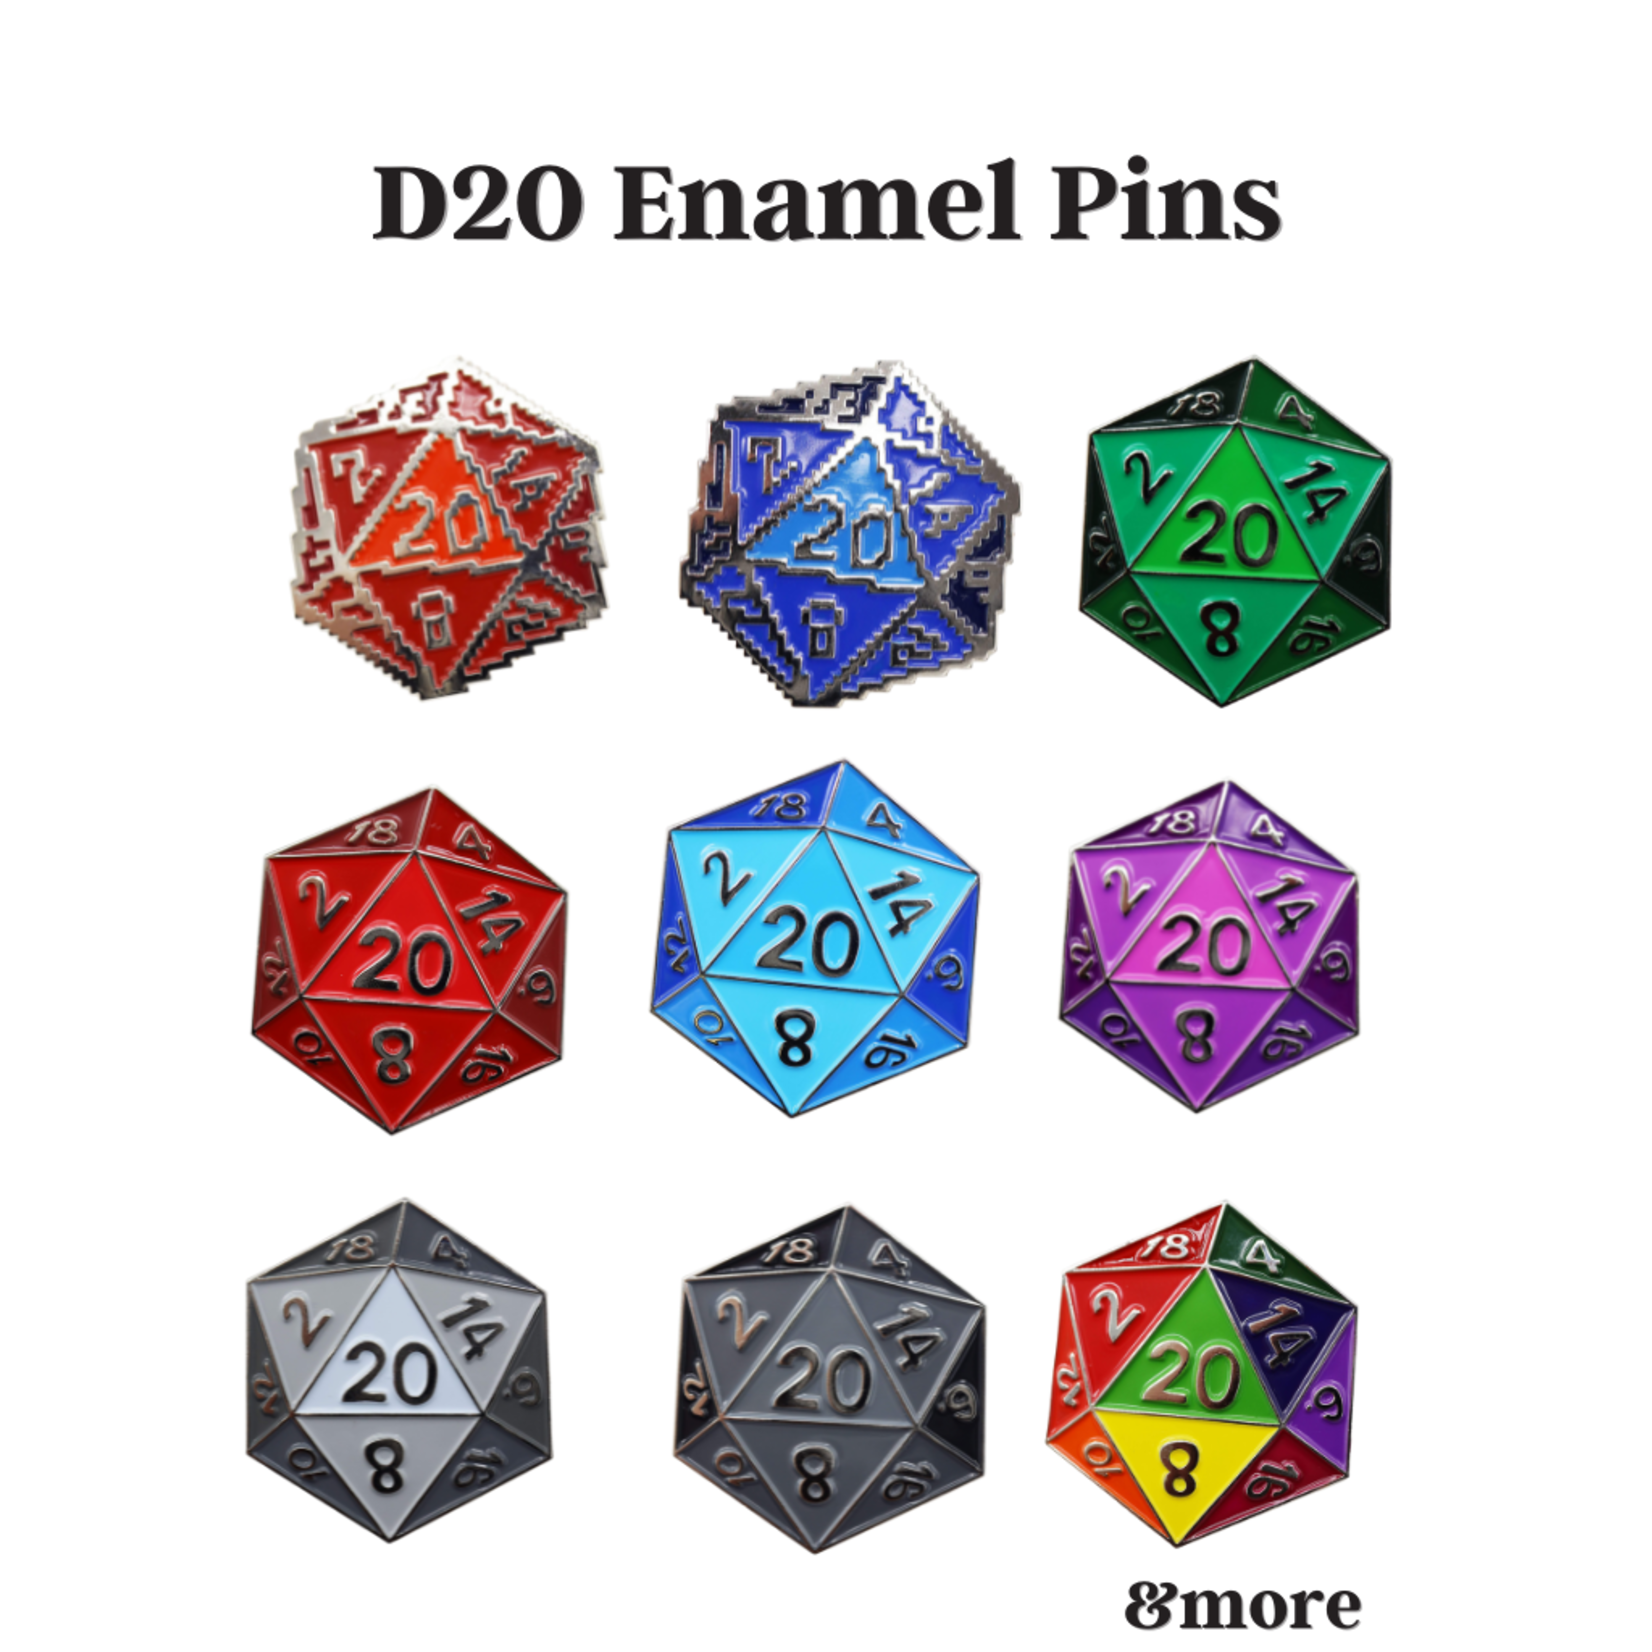 D20 Enamel Pins